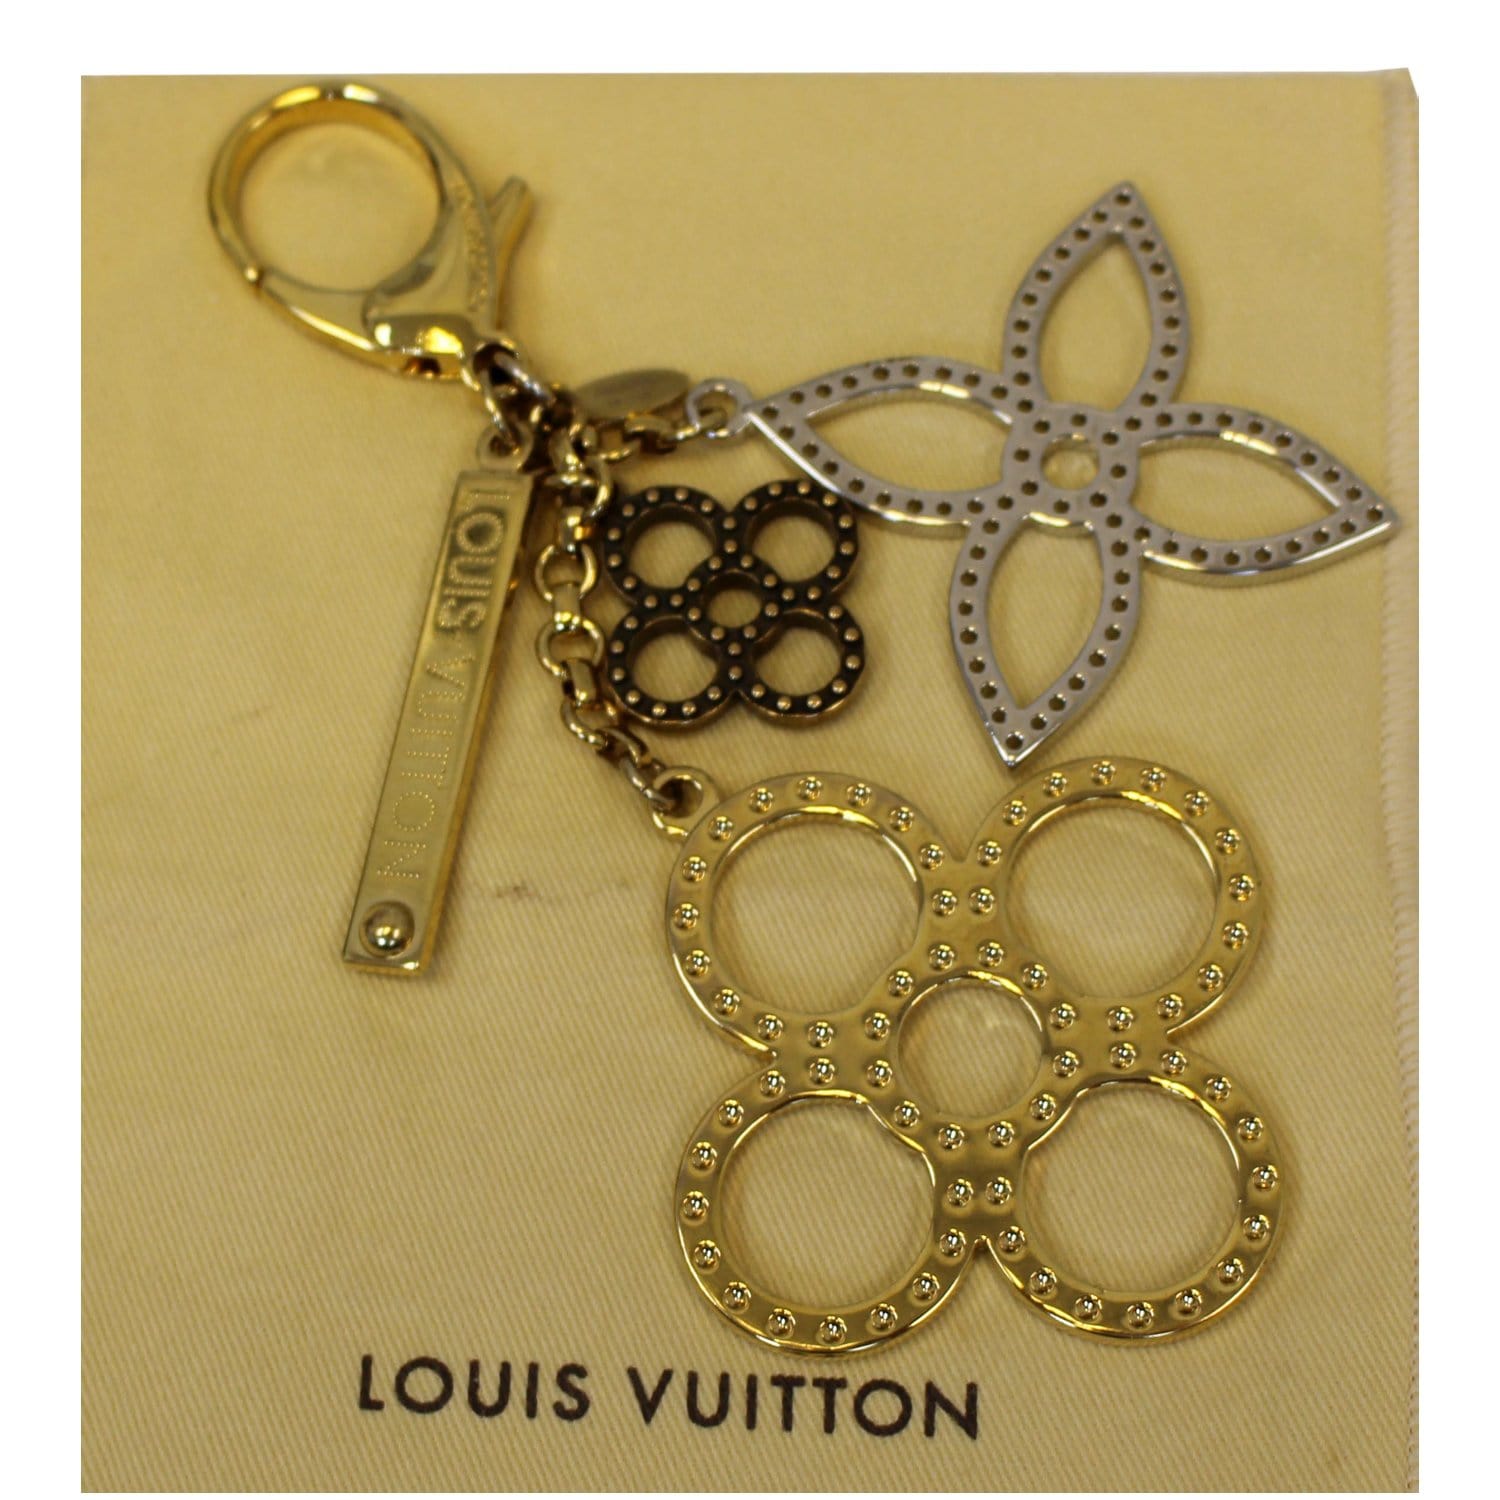 LOUIS VUITTON Accessory Bag Charm Key Chain Bijoux Sac Insolence Tortoise  M65087